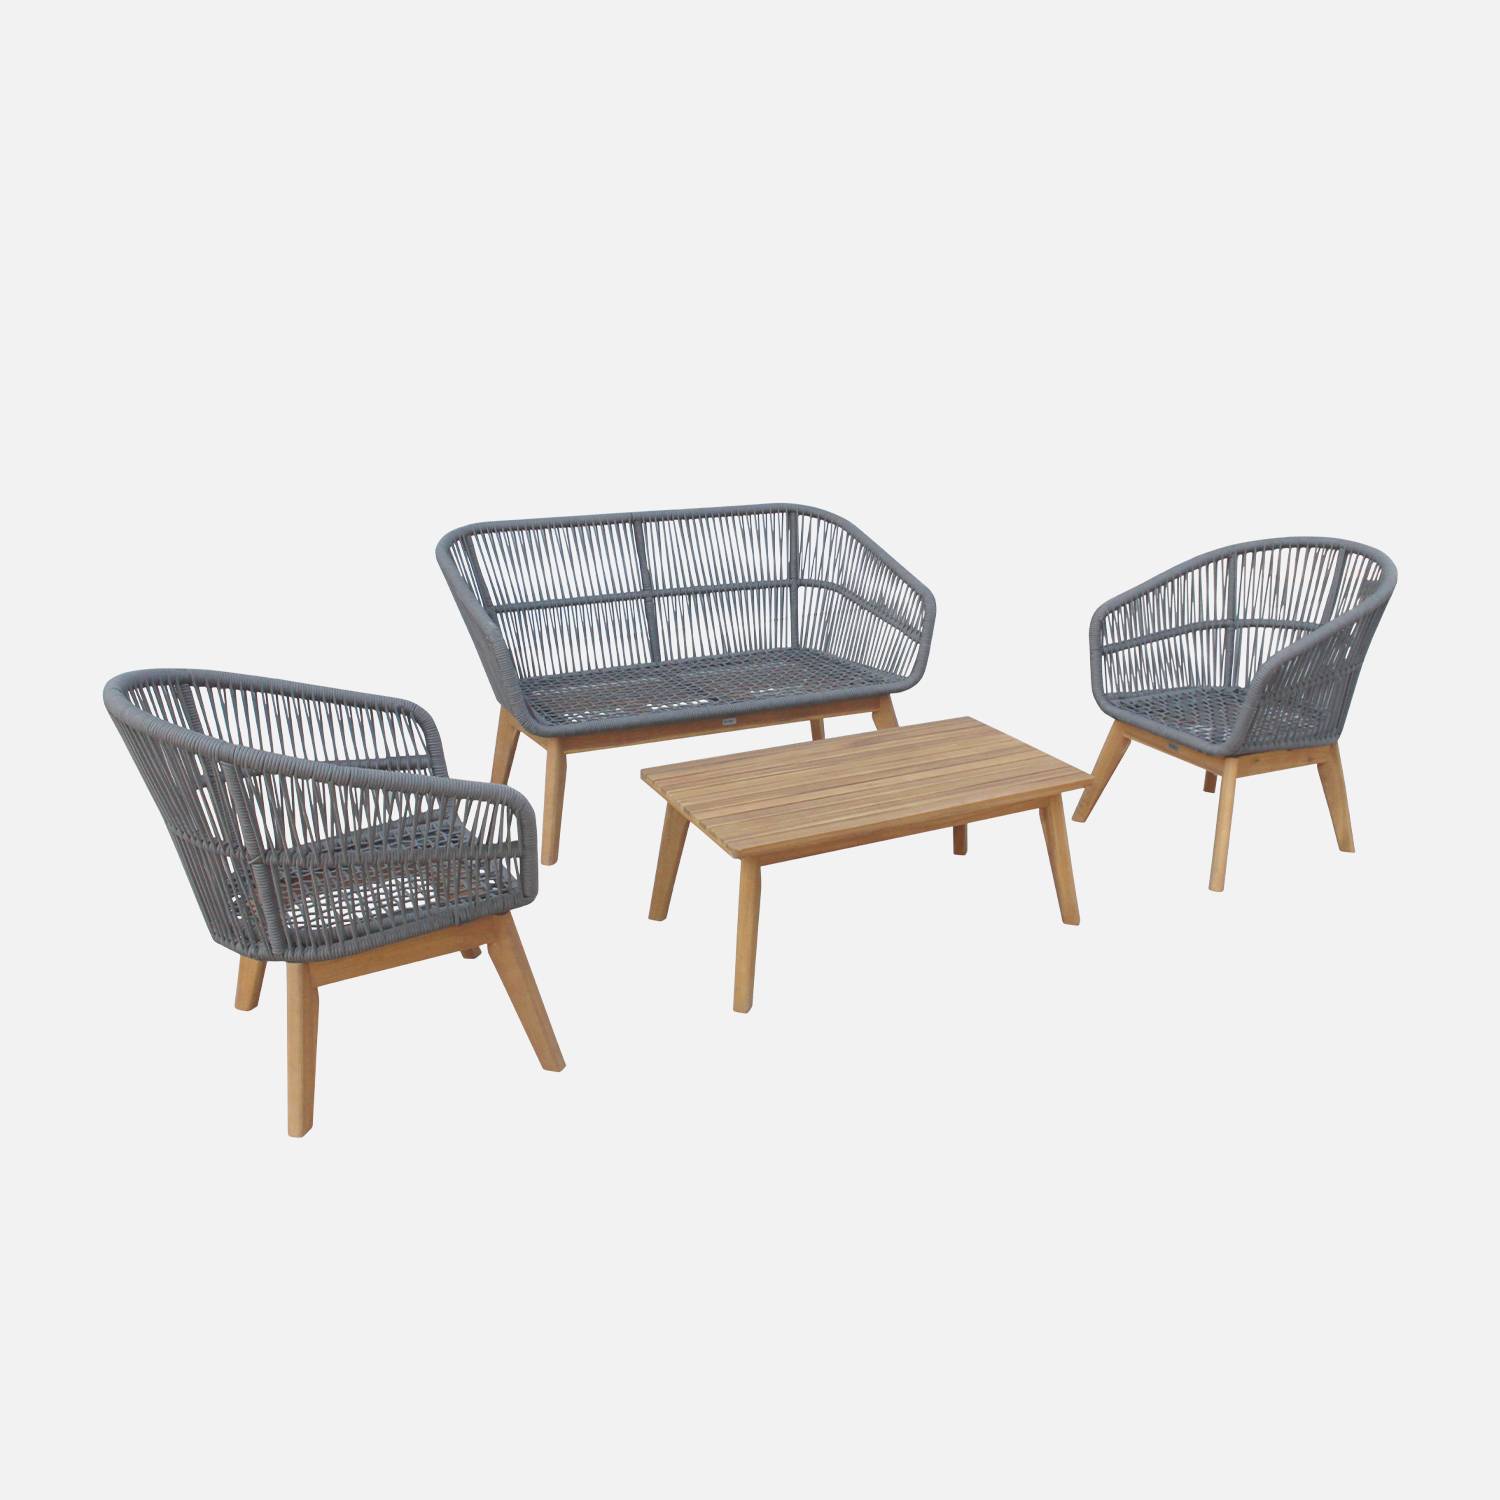 Gartengarnitur 4 Sitze - ROSARIO - aus geflochtenen Seilen, Holz und Aluminium, grau / graumelierte Kissen Photo8